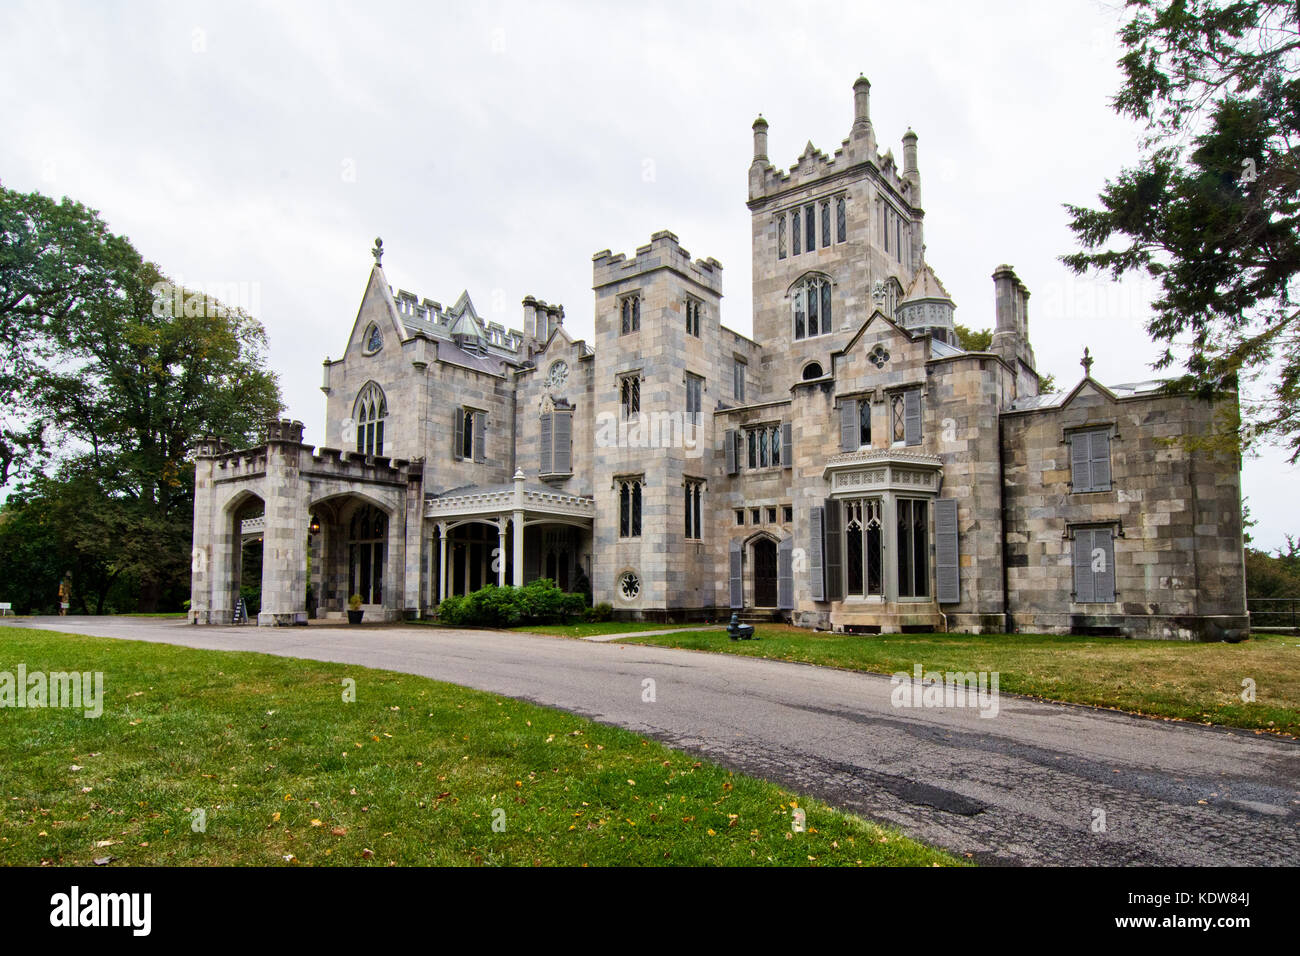 L'architettura gotica della storica Lyndhurst Mansion, sulle rive del fiume Hudson, Tarrytown, New York, Stati Uniti d'America Foto Stock